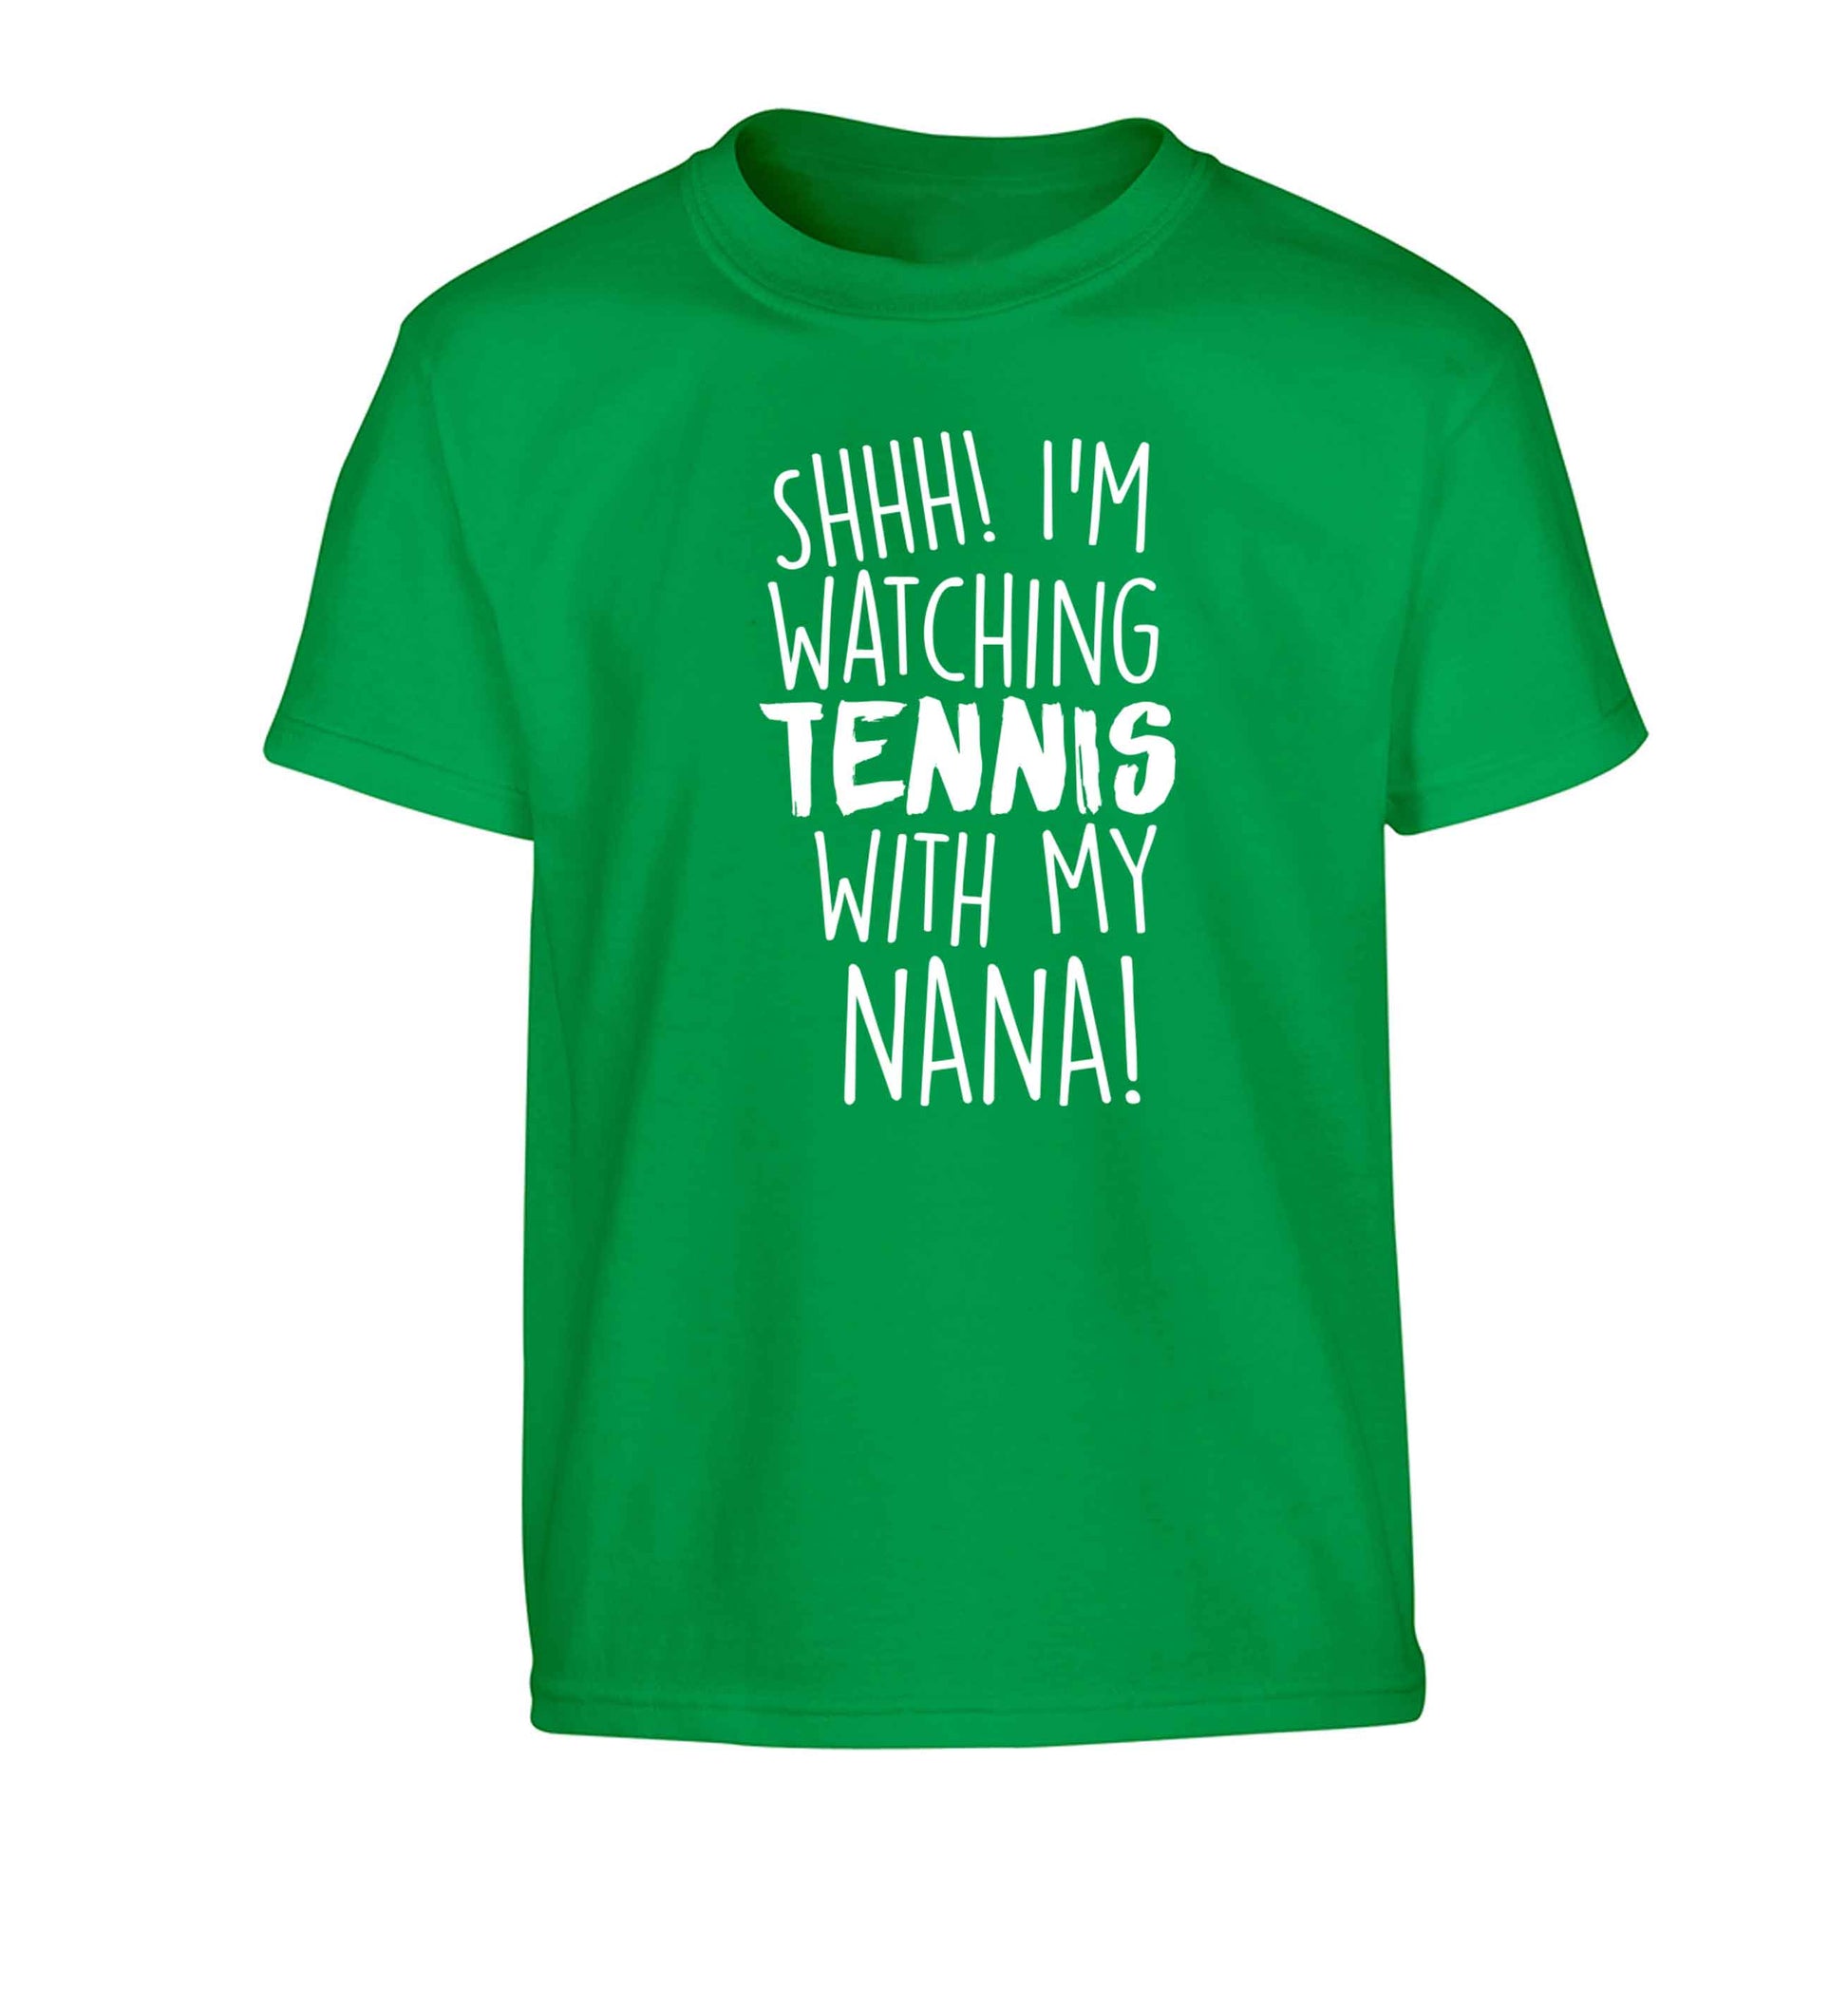 Shh! I'm watching tennis with my nana! Children's green Tshirt 12-13 Years